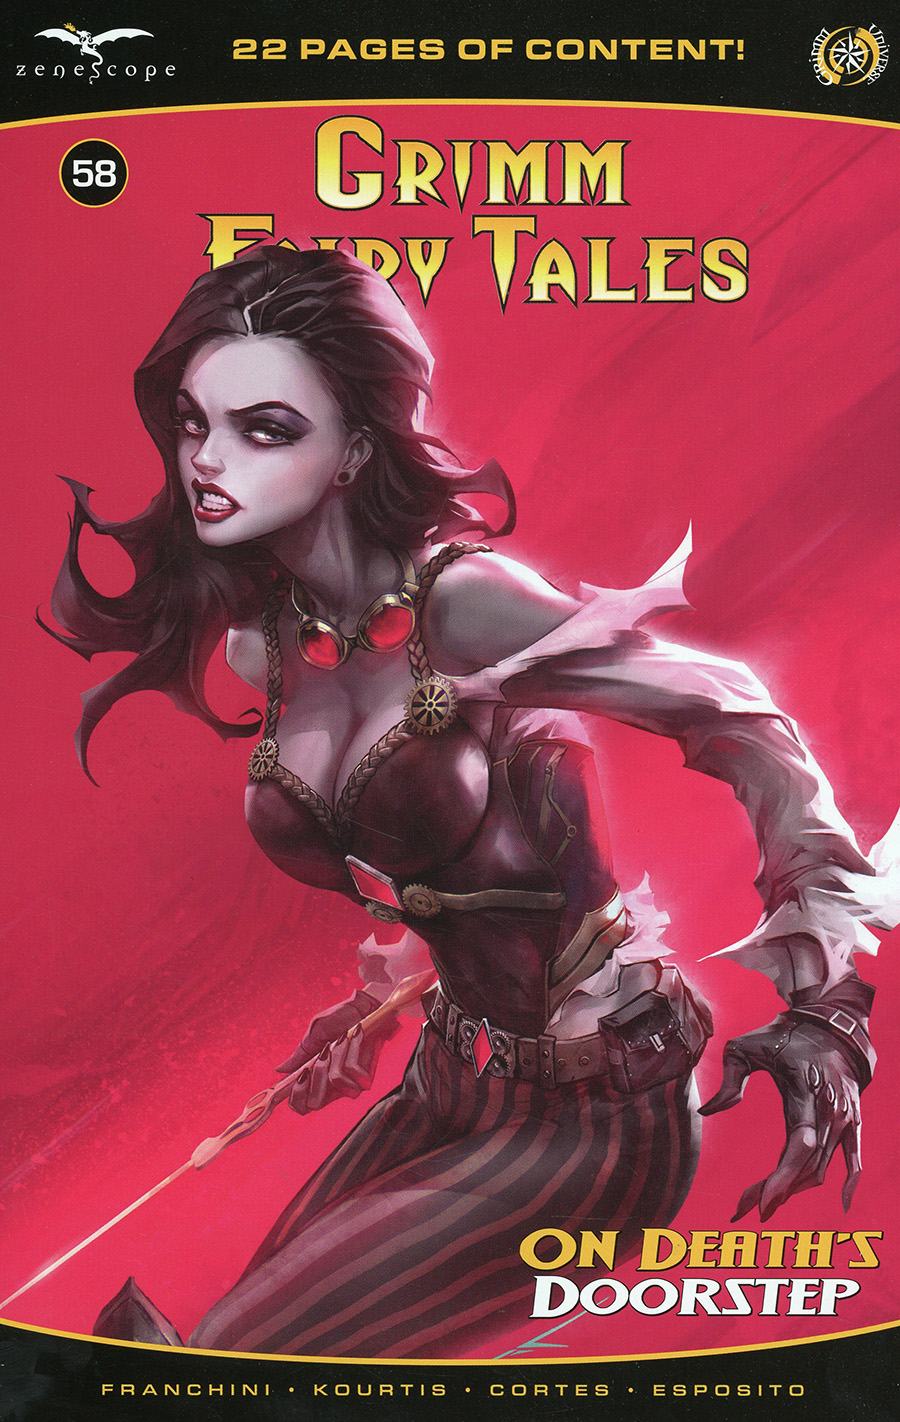 Grimm Fairy Tales Vol 2 #58 Cover D Ivan Tao